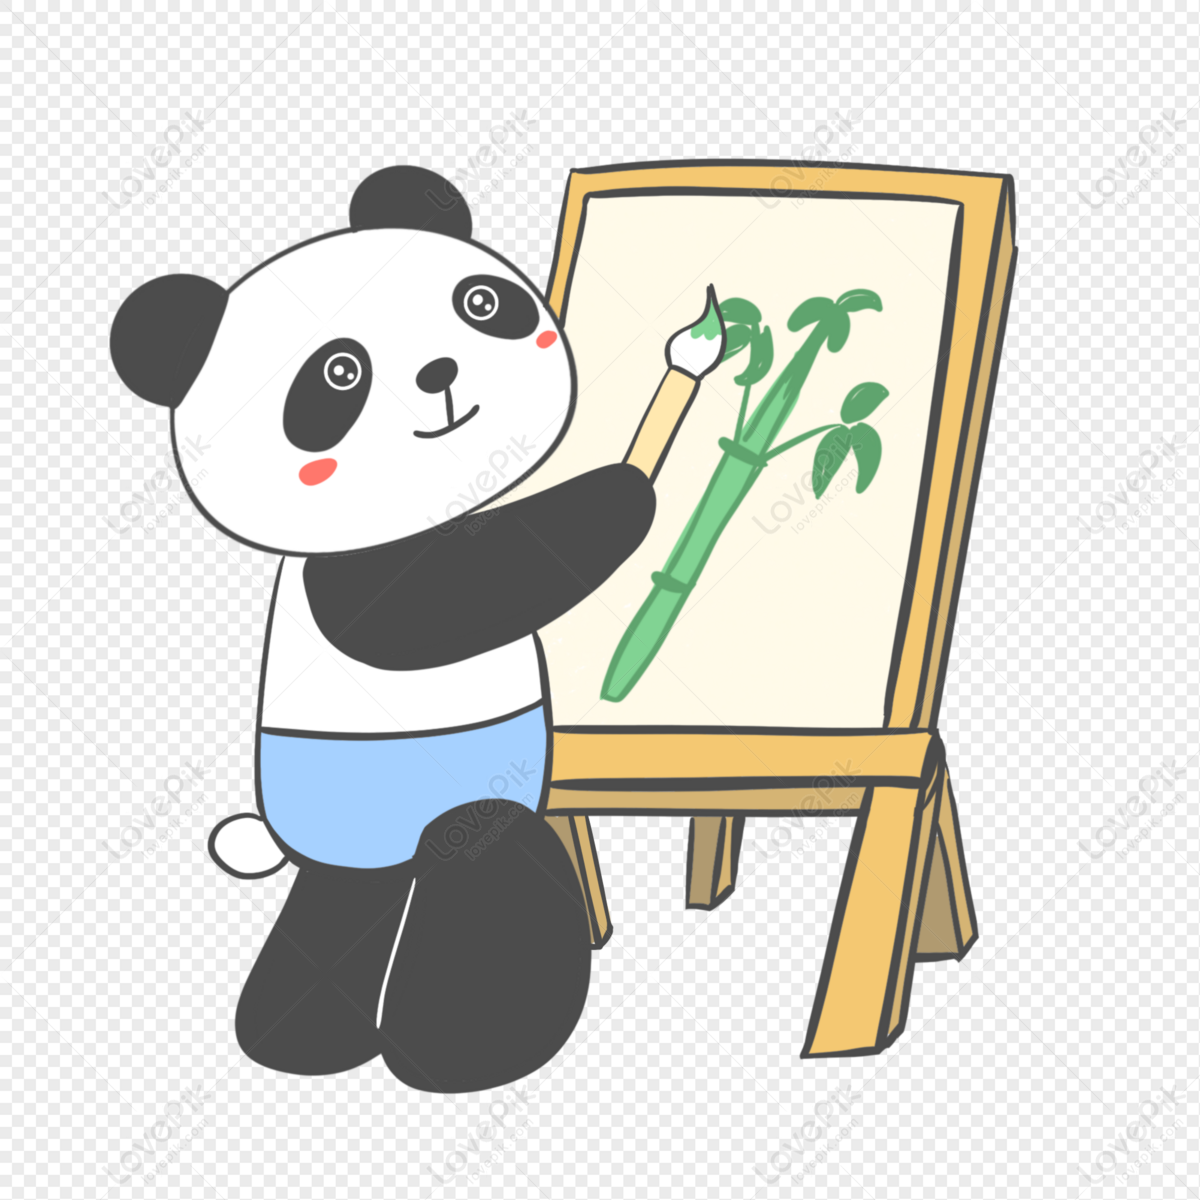 A cute cartoon panda cub eating bamboo on a white ba...